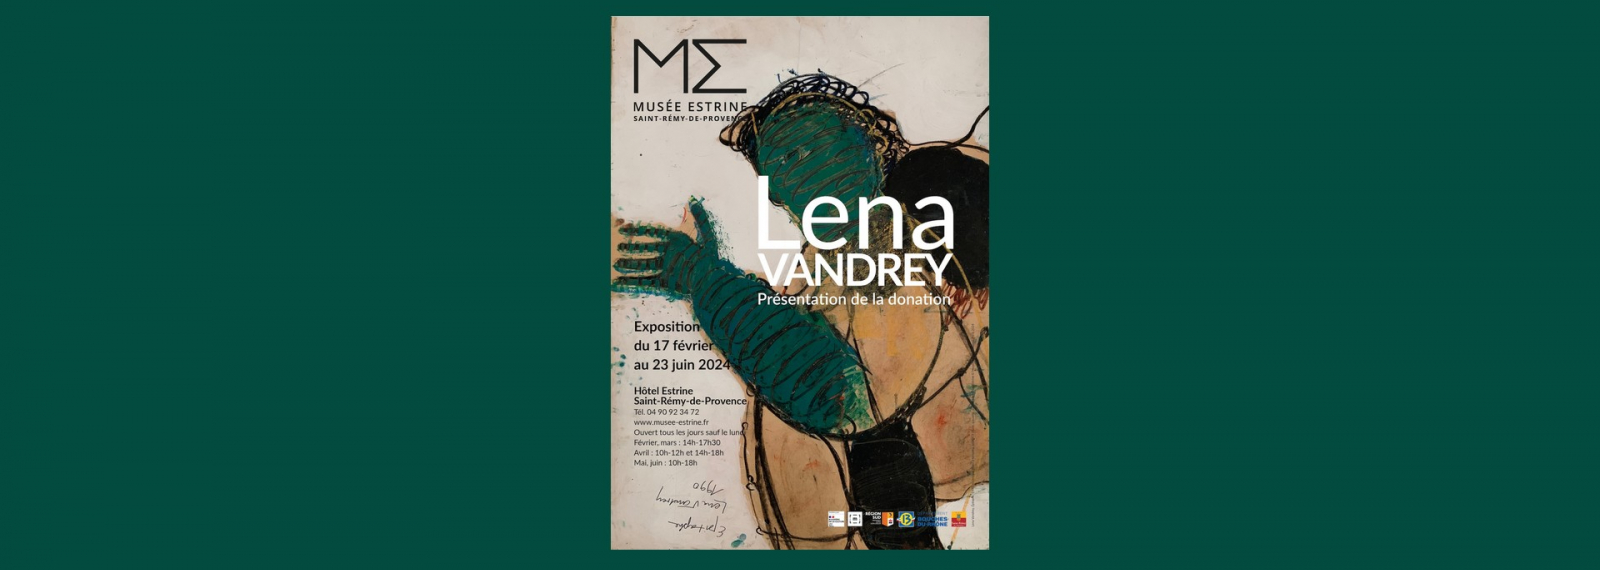 Exposition Lena Vandrey au musée Estrine à Saint-Rémy-de-Provence